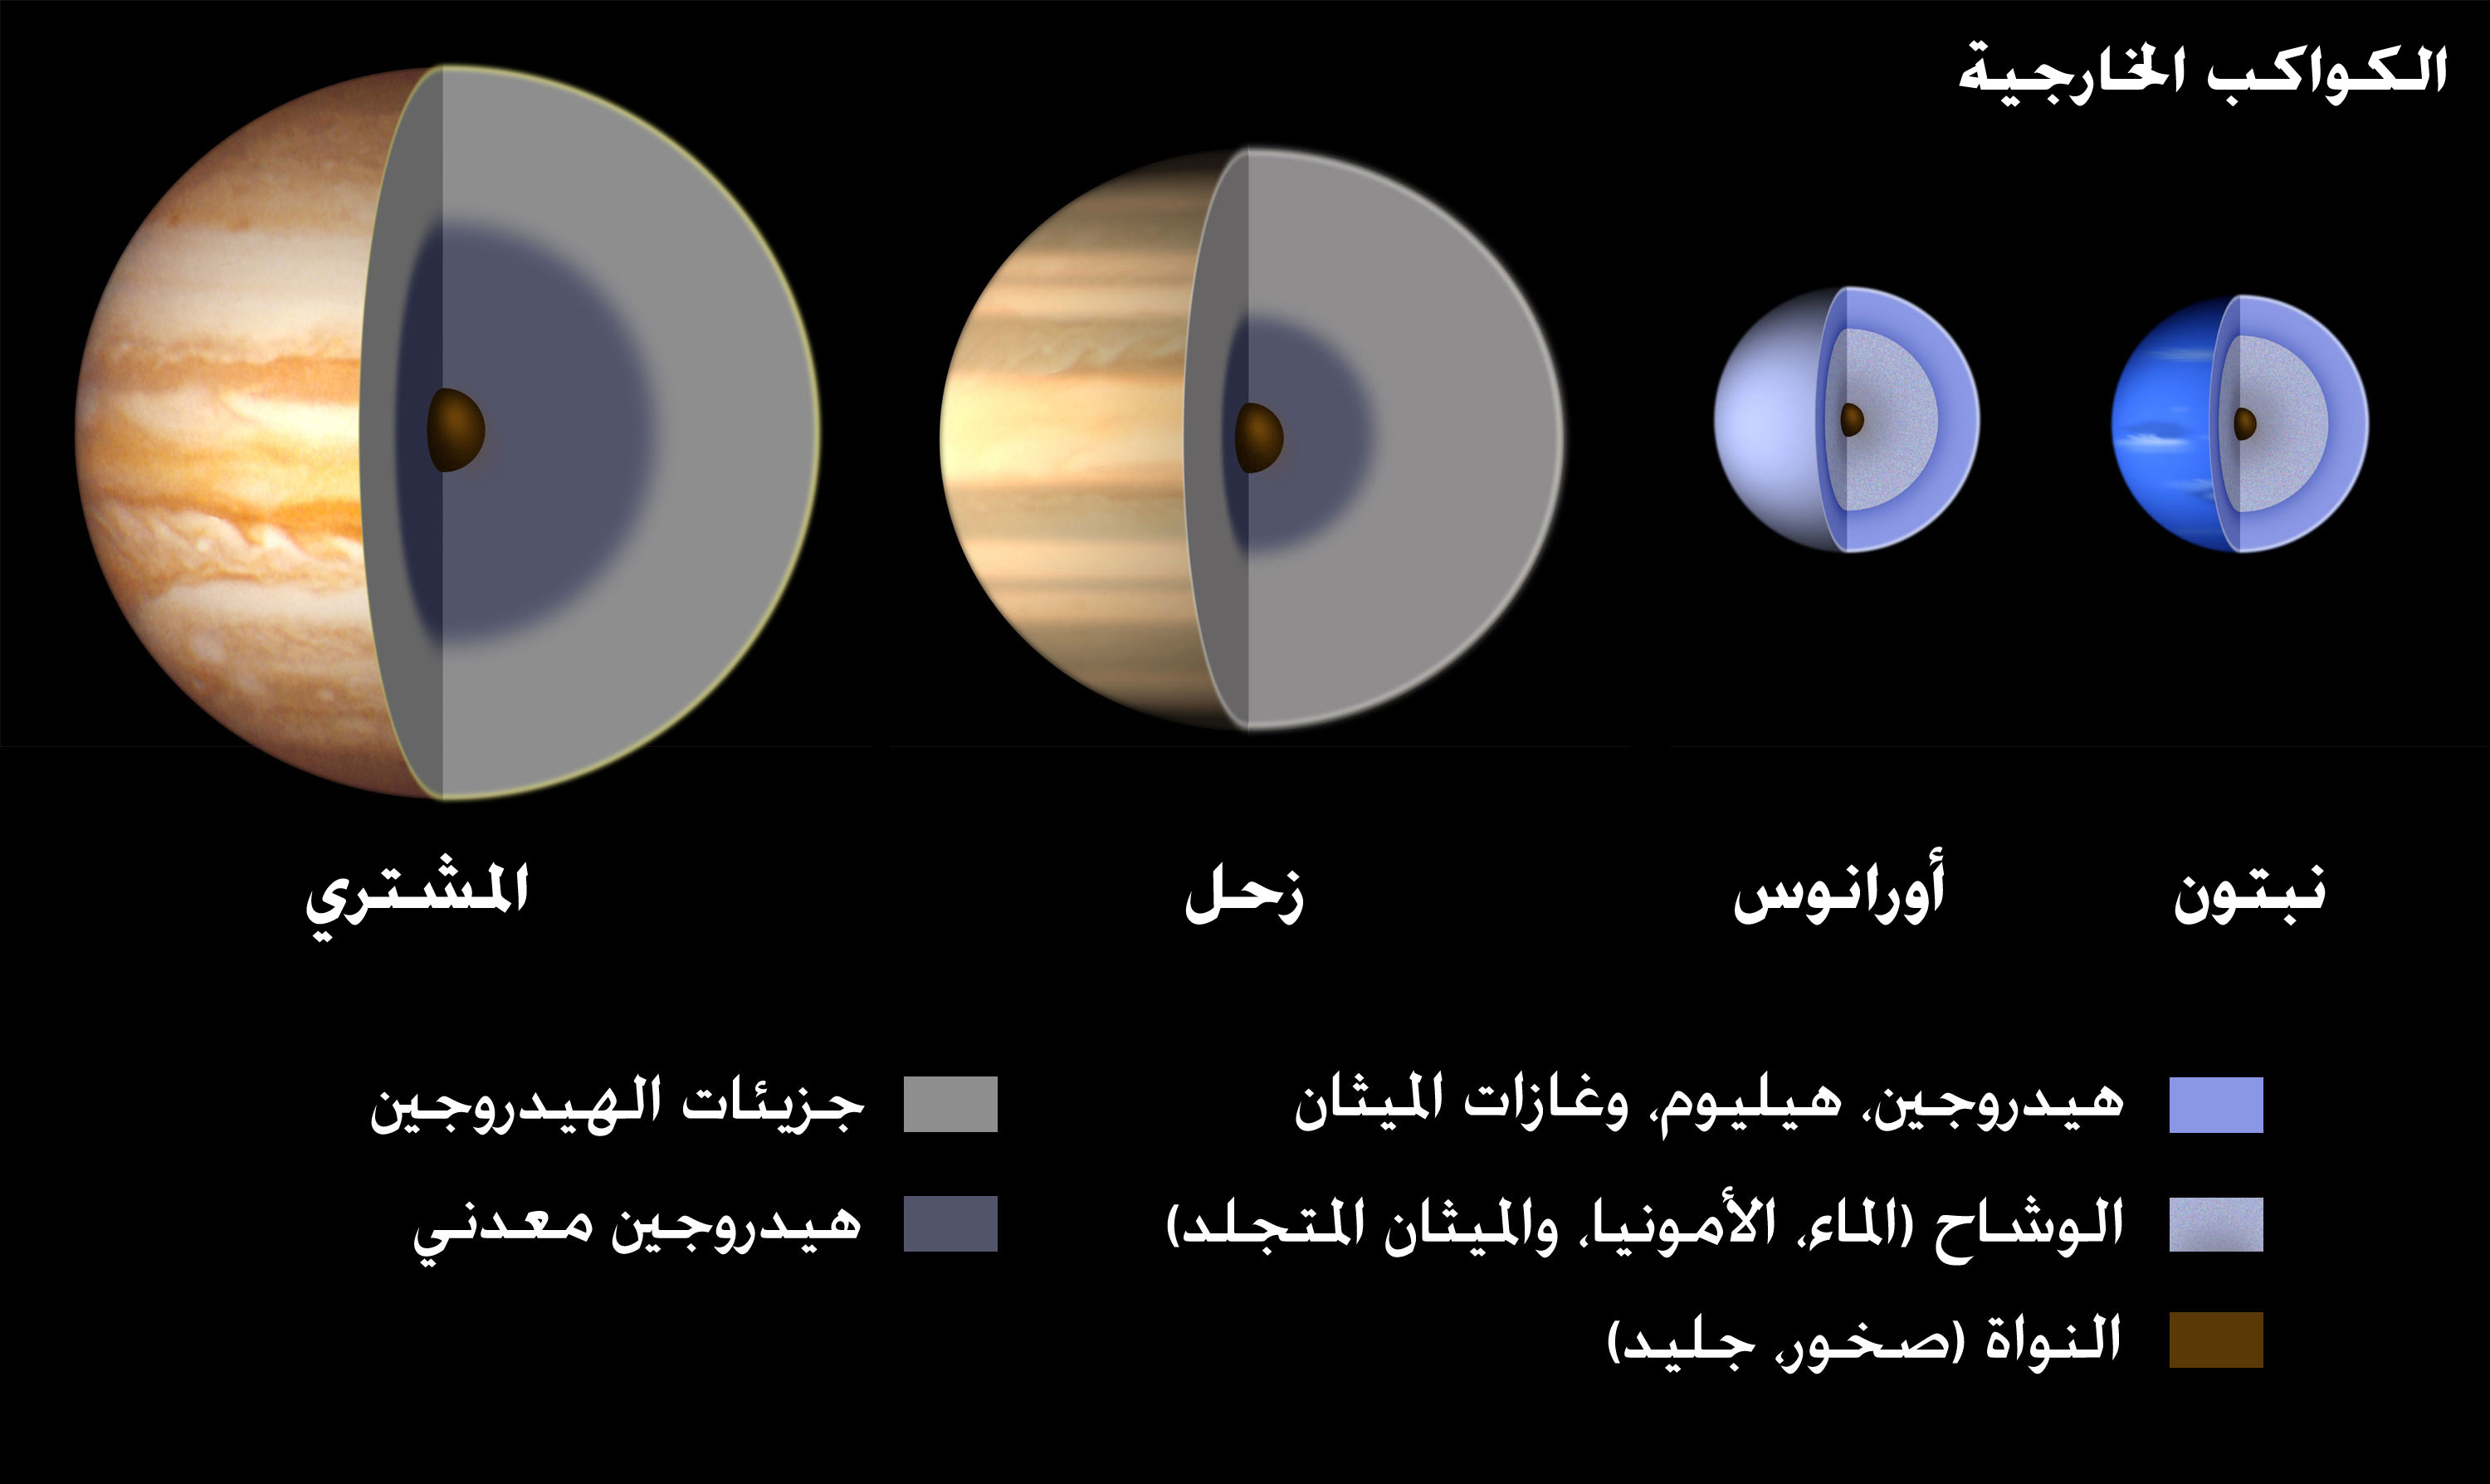 الكواكب الخارجية هي كواكب فلزية